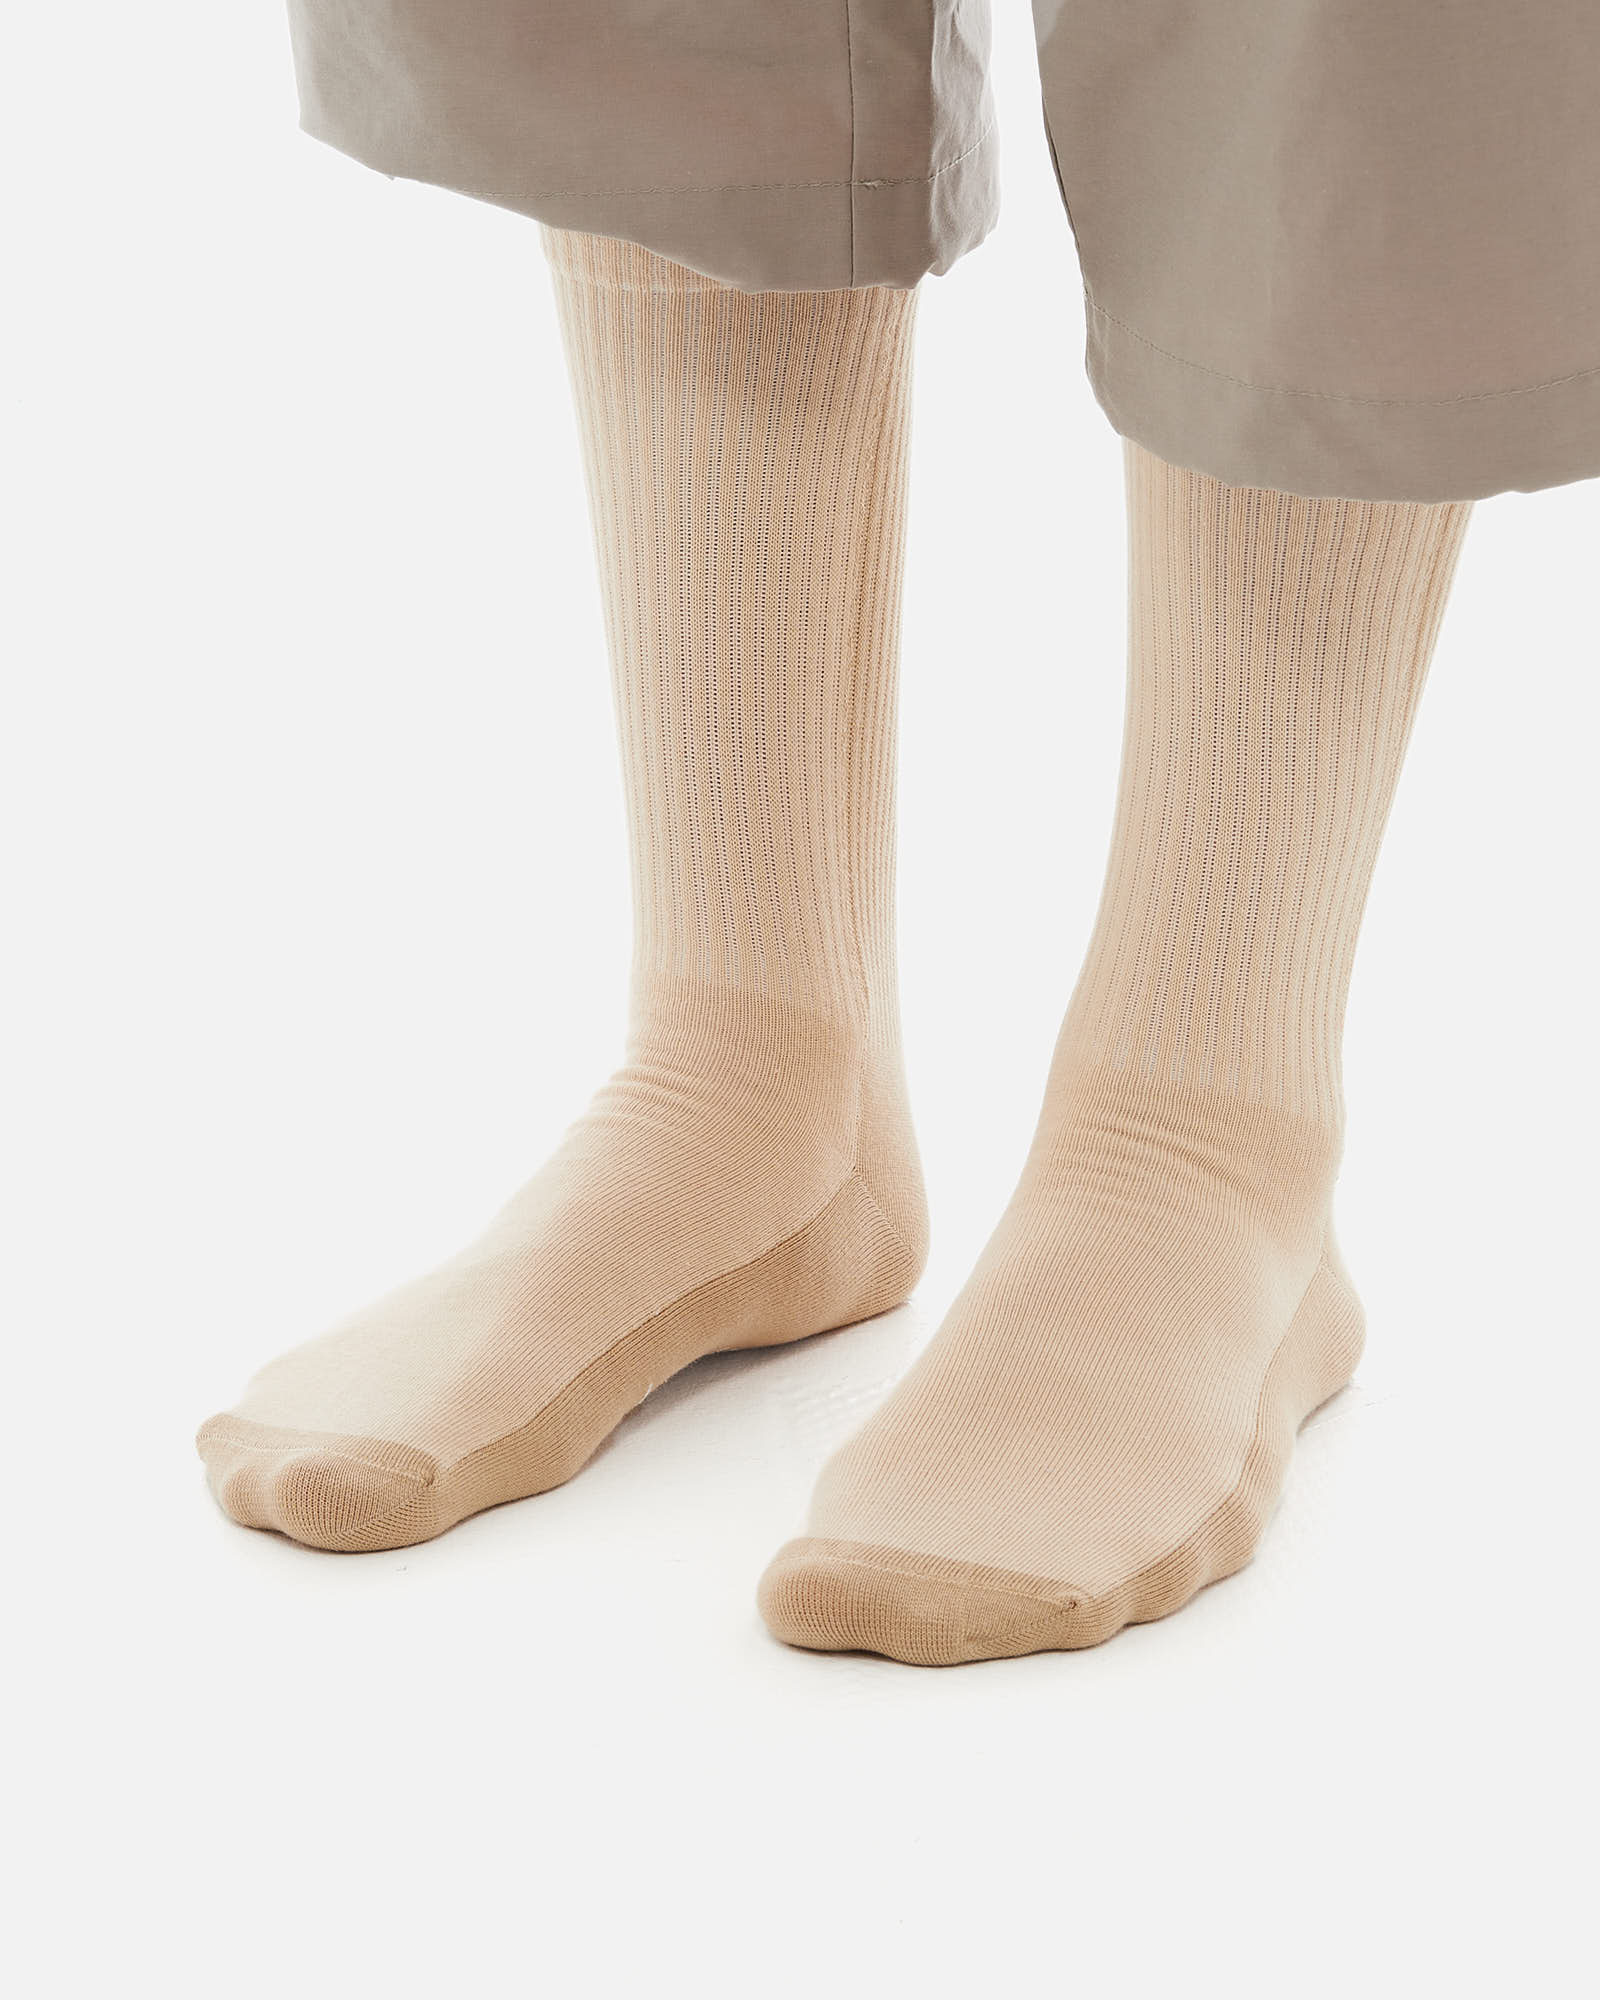 Носки Anteater Socks - фото 2